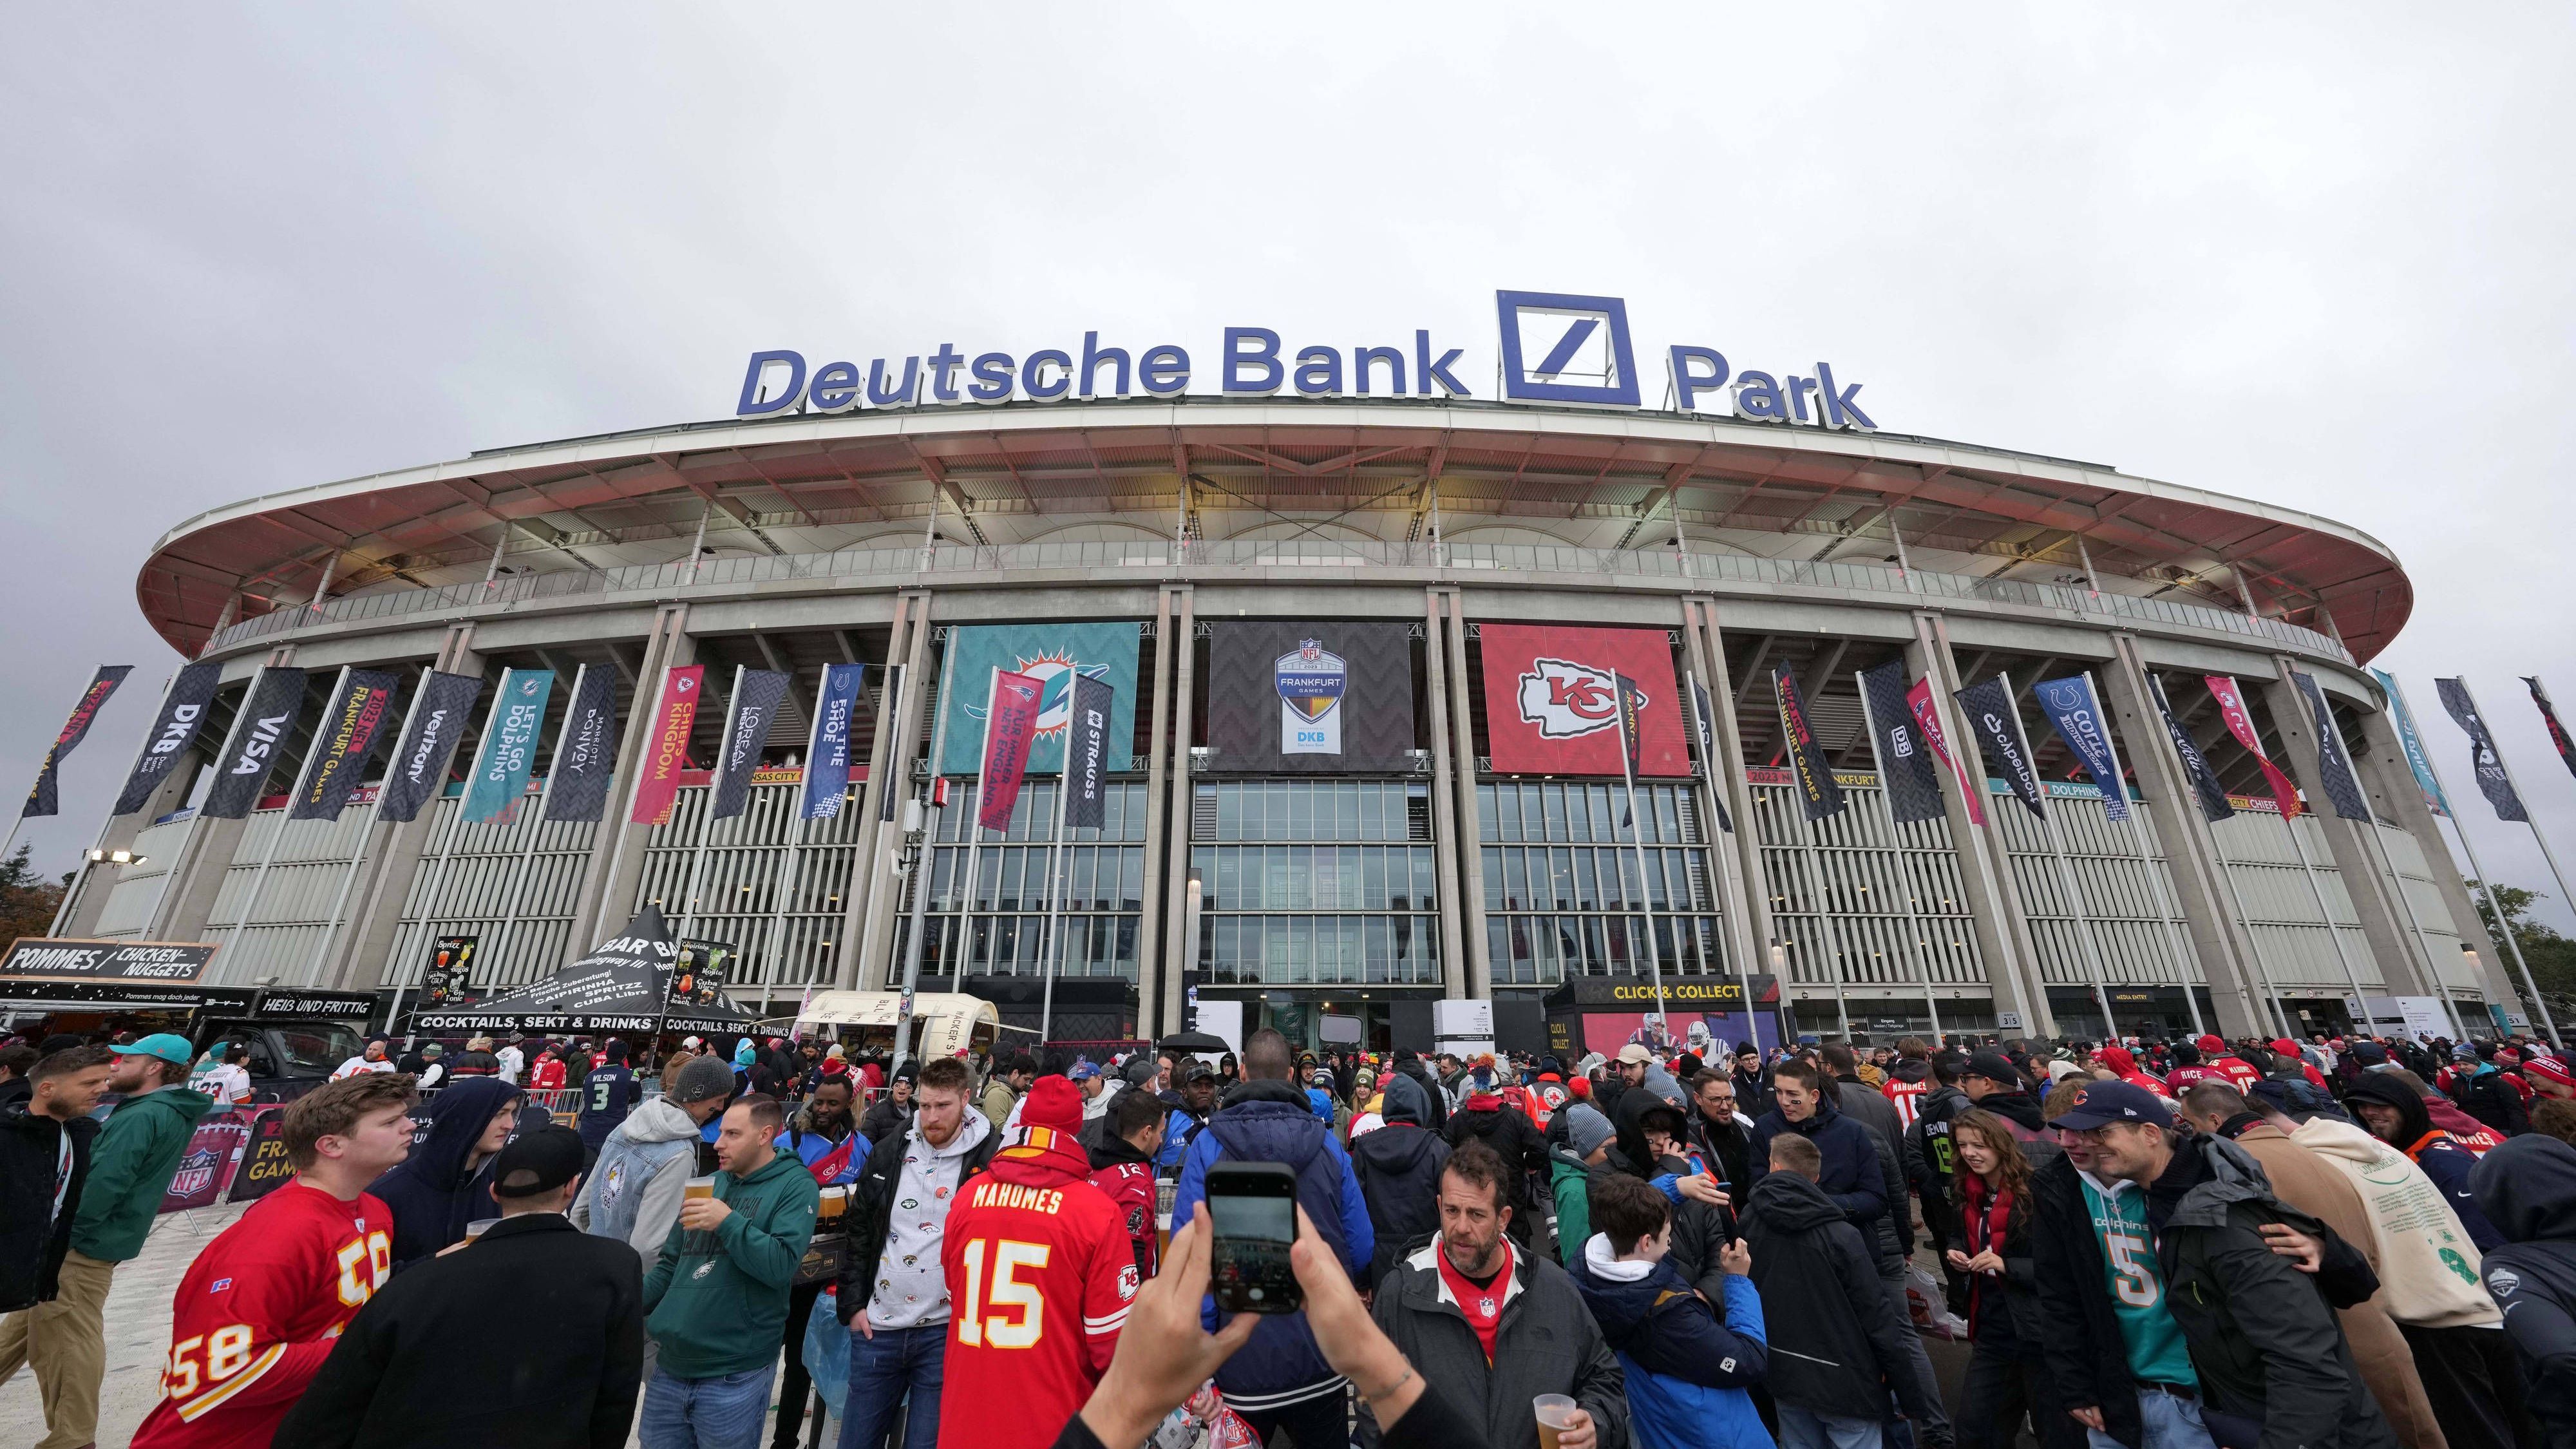 <strong>NFL in Deutschland: Die besten Bilder aus Frankfurt<br></strong>Auch das zweite NFL-Spiel auf deutschem Boden war ein Riesenerfolg. In der Frankfurter Innenstadt, vor dem Deutsche Bank Park und auf den Rängen feierten tausende Fans die Rückkehr der besten Football-Liga der Welt nach Deutschland. <em><strong>ran</strong></em> zeigt die schönsten Bilder vom ersten NFL Frankfurt Game.